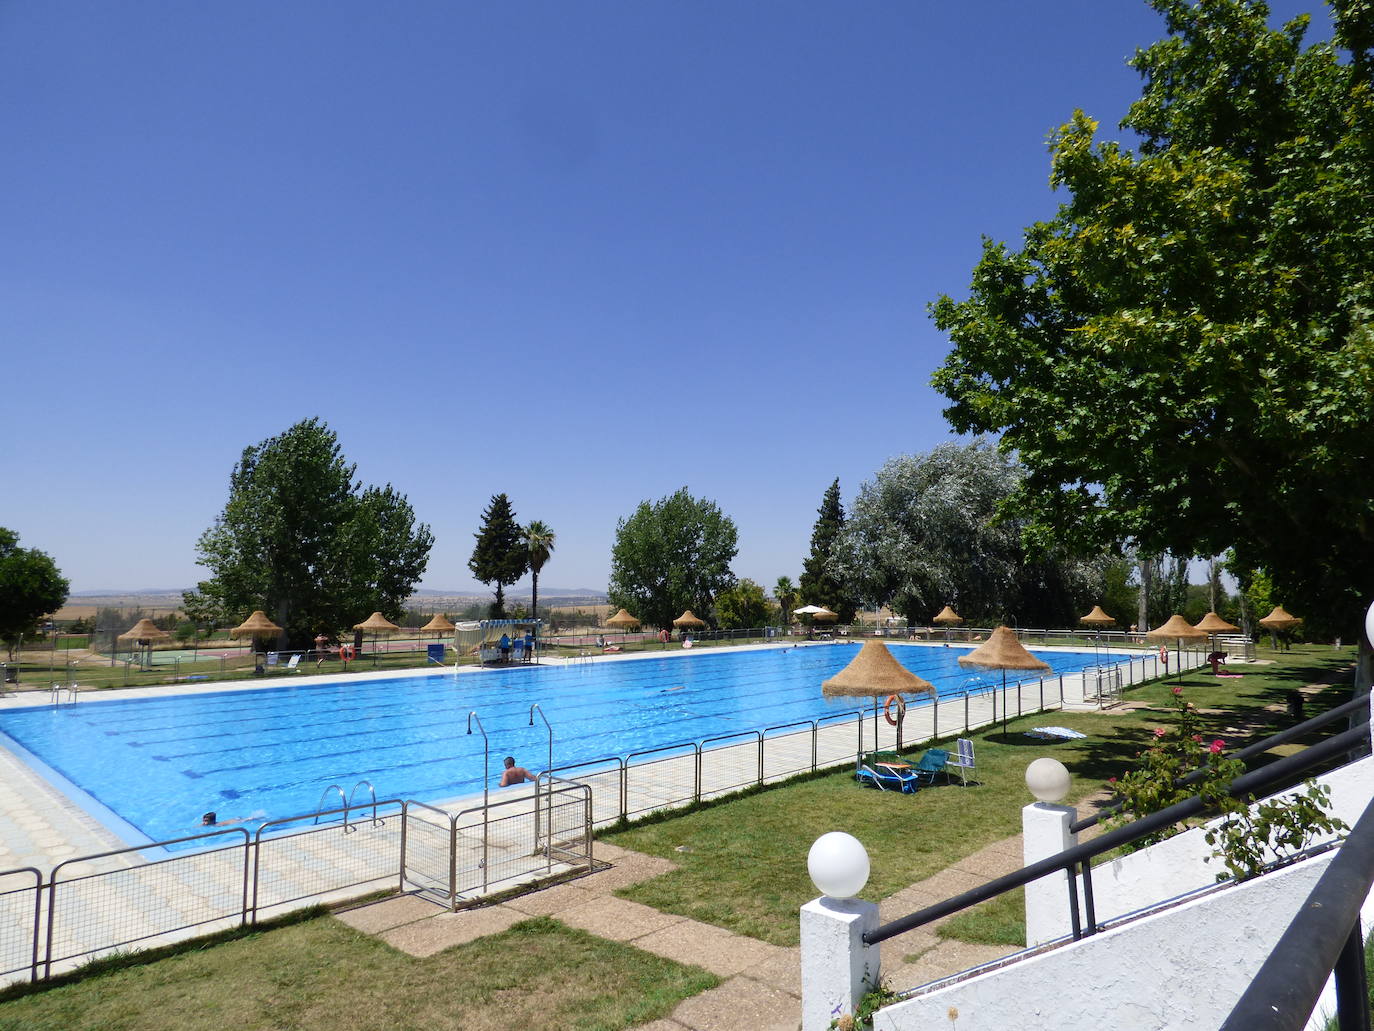 La piscina municipal abre sus puertas mañana martes, 21 de junio